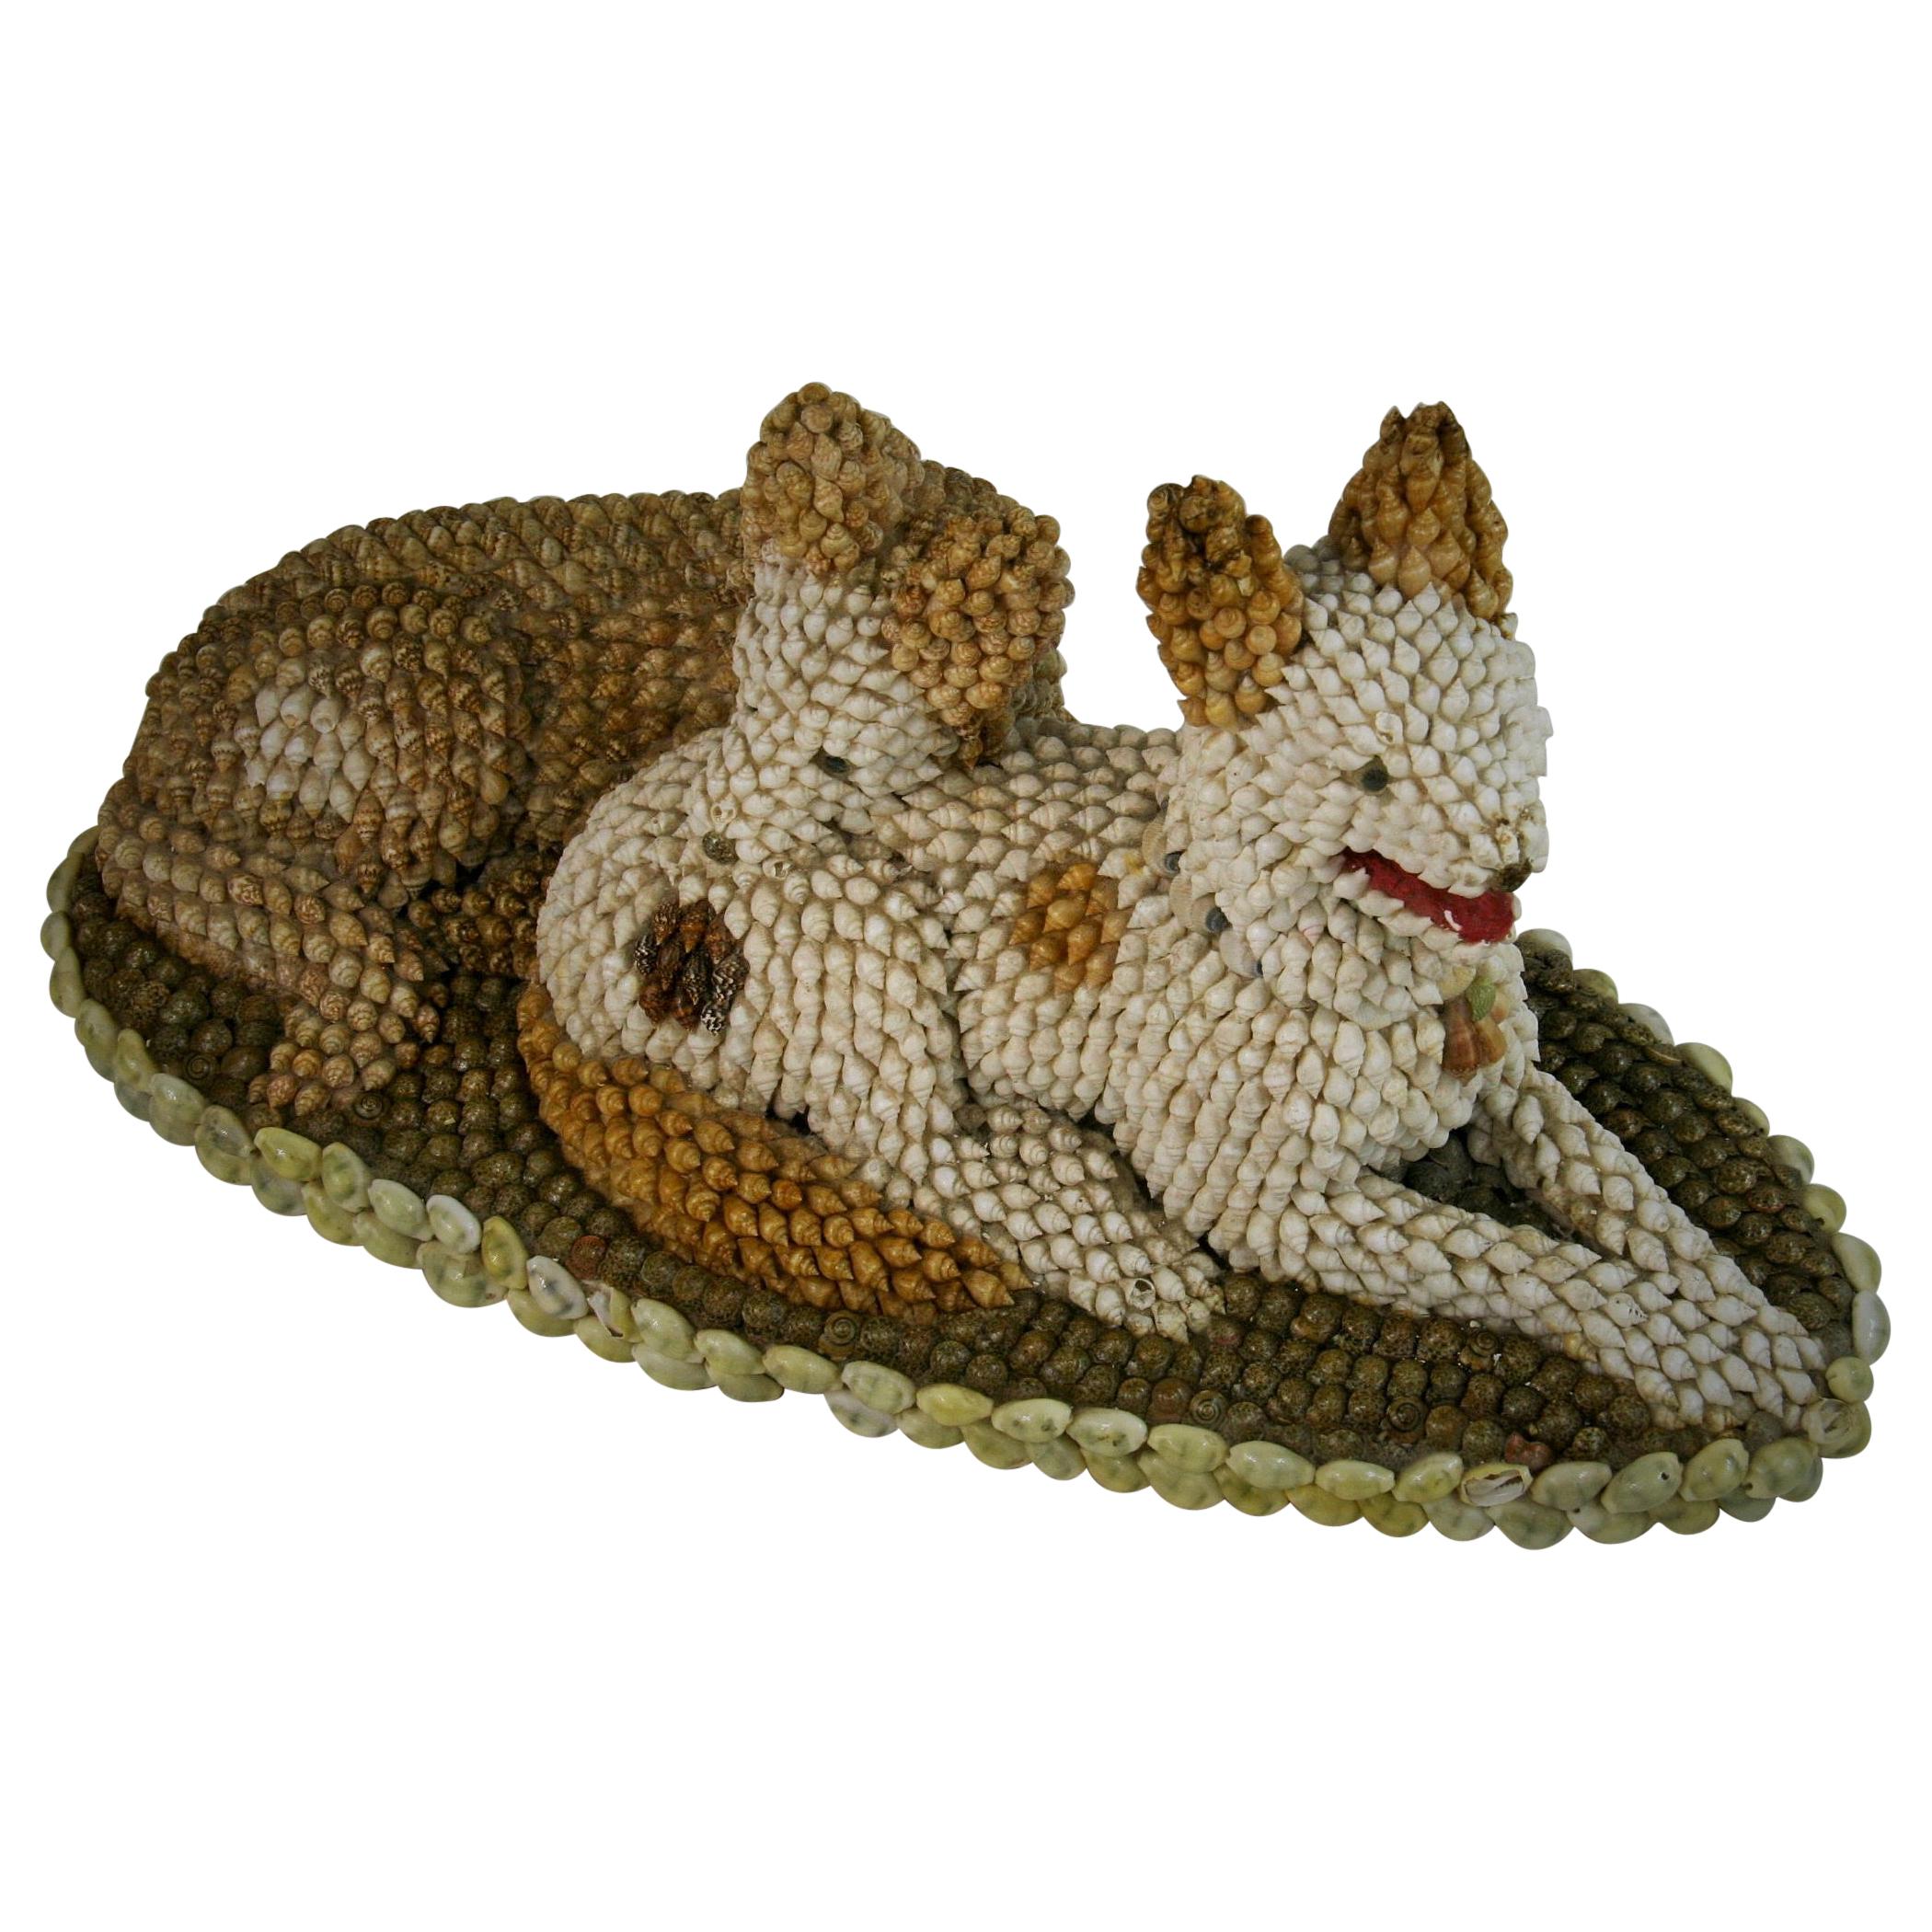 2-327 Art populaire étonnant  Sculpture de deux chiens réalisée à partir de coquillages de différentes tailles, couleurs et formes.